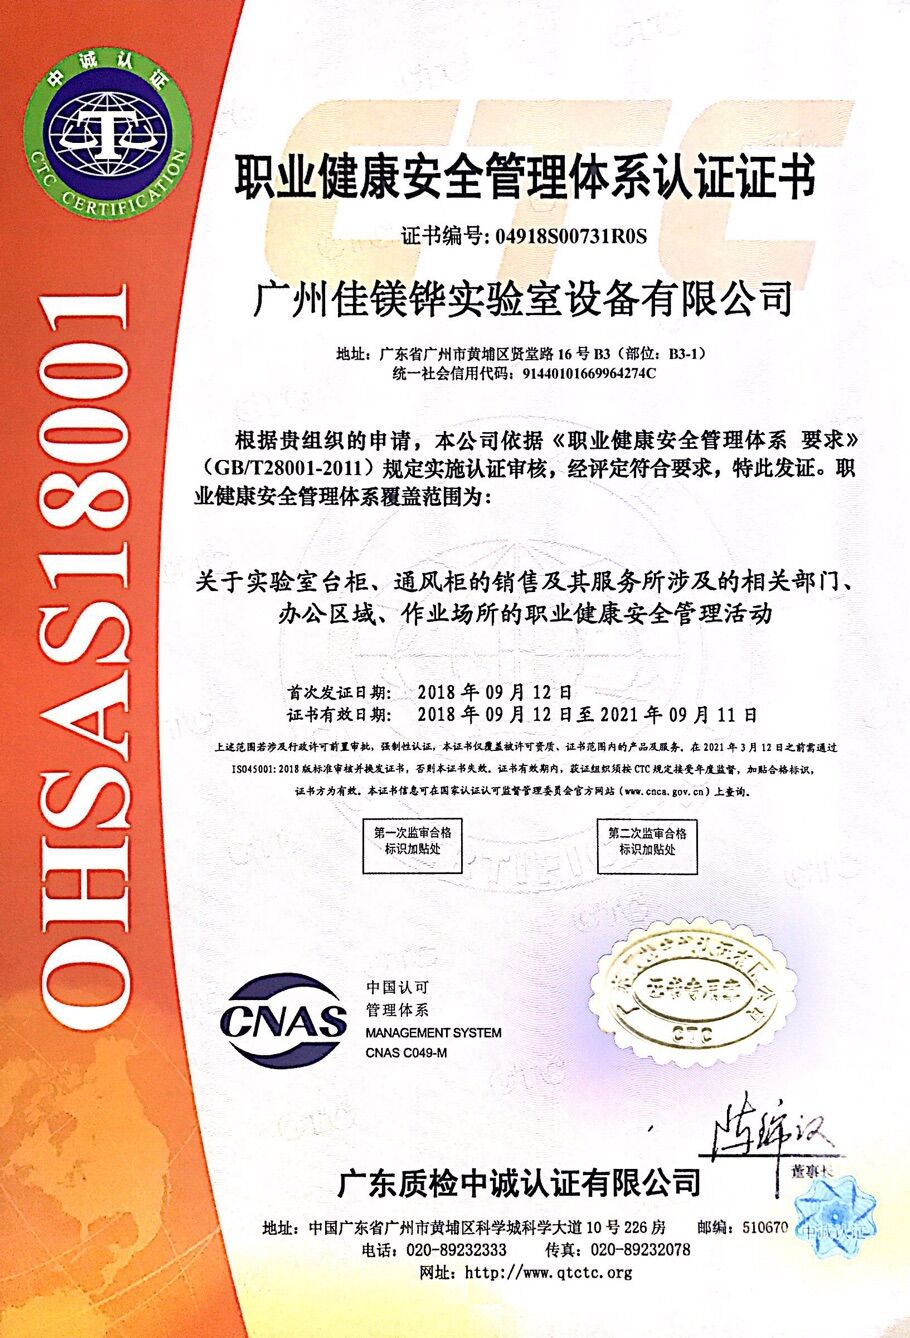 職業健康(kang)安全管理體系認證證書